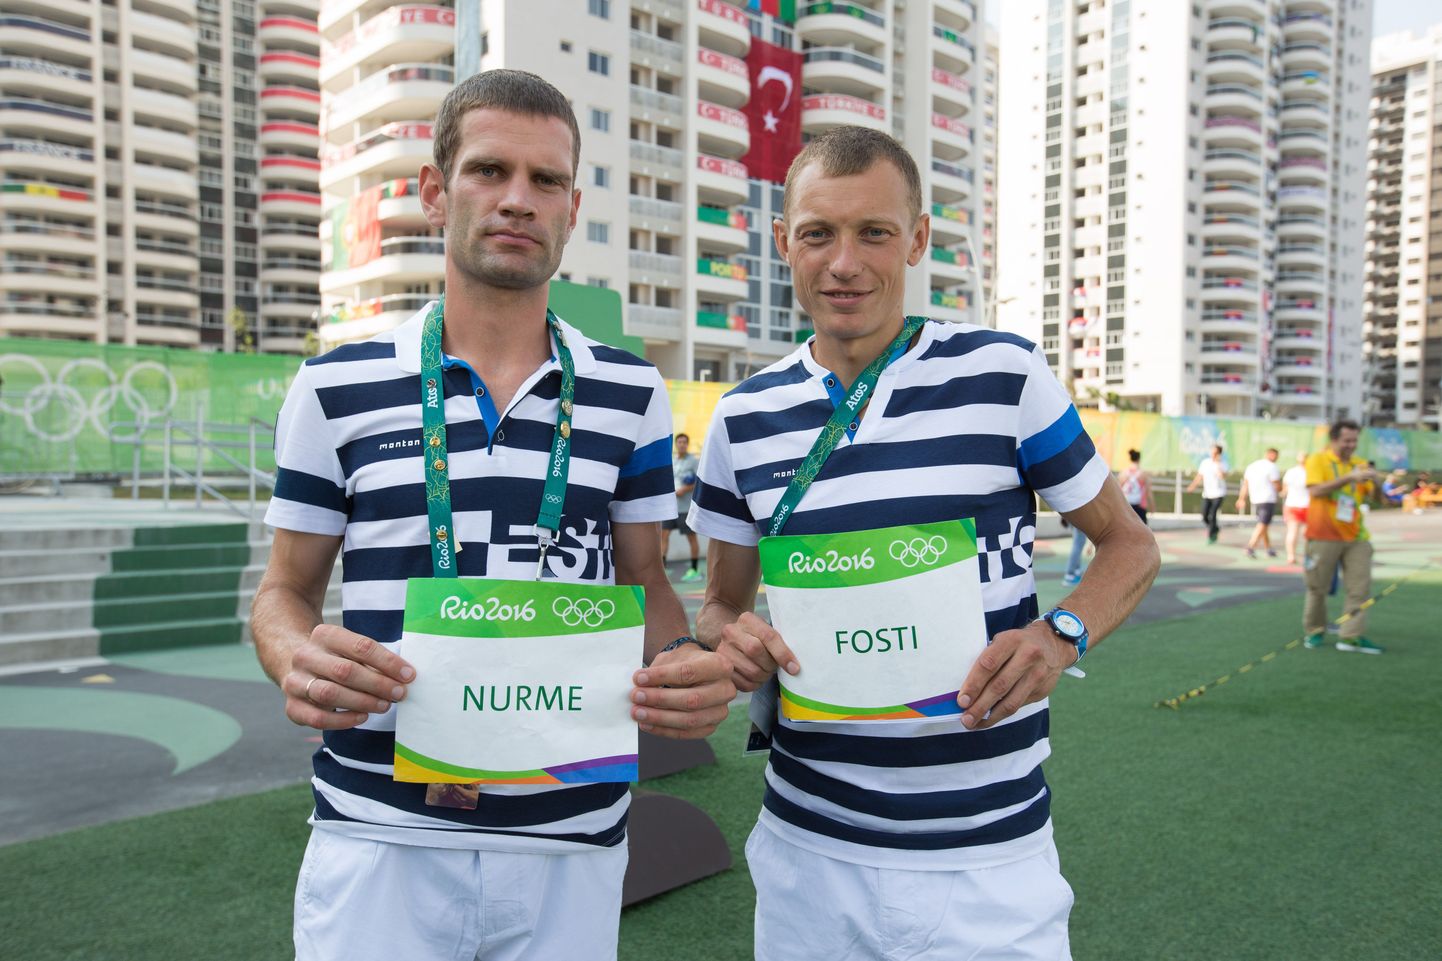 Tiidrek Nurme ja Roman Fosti Rio olümpiakülas.